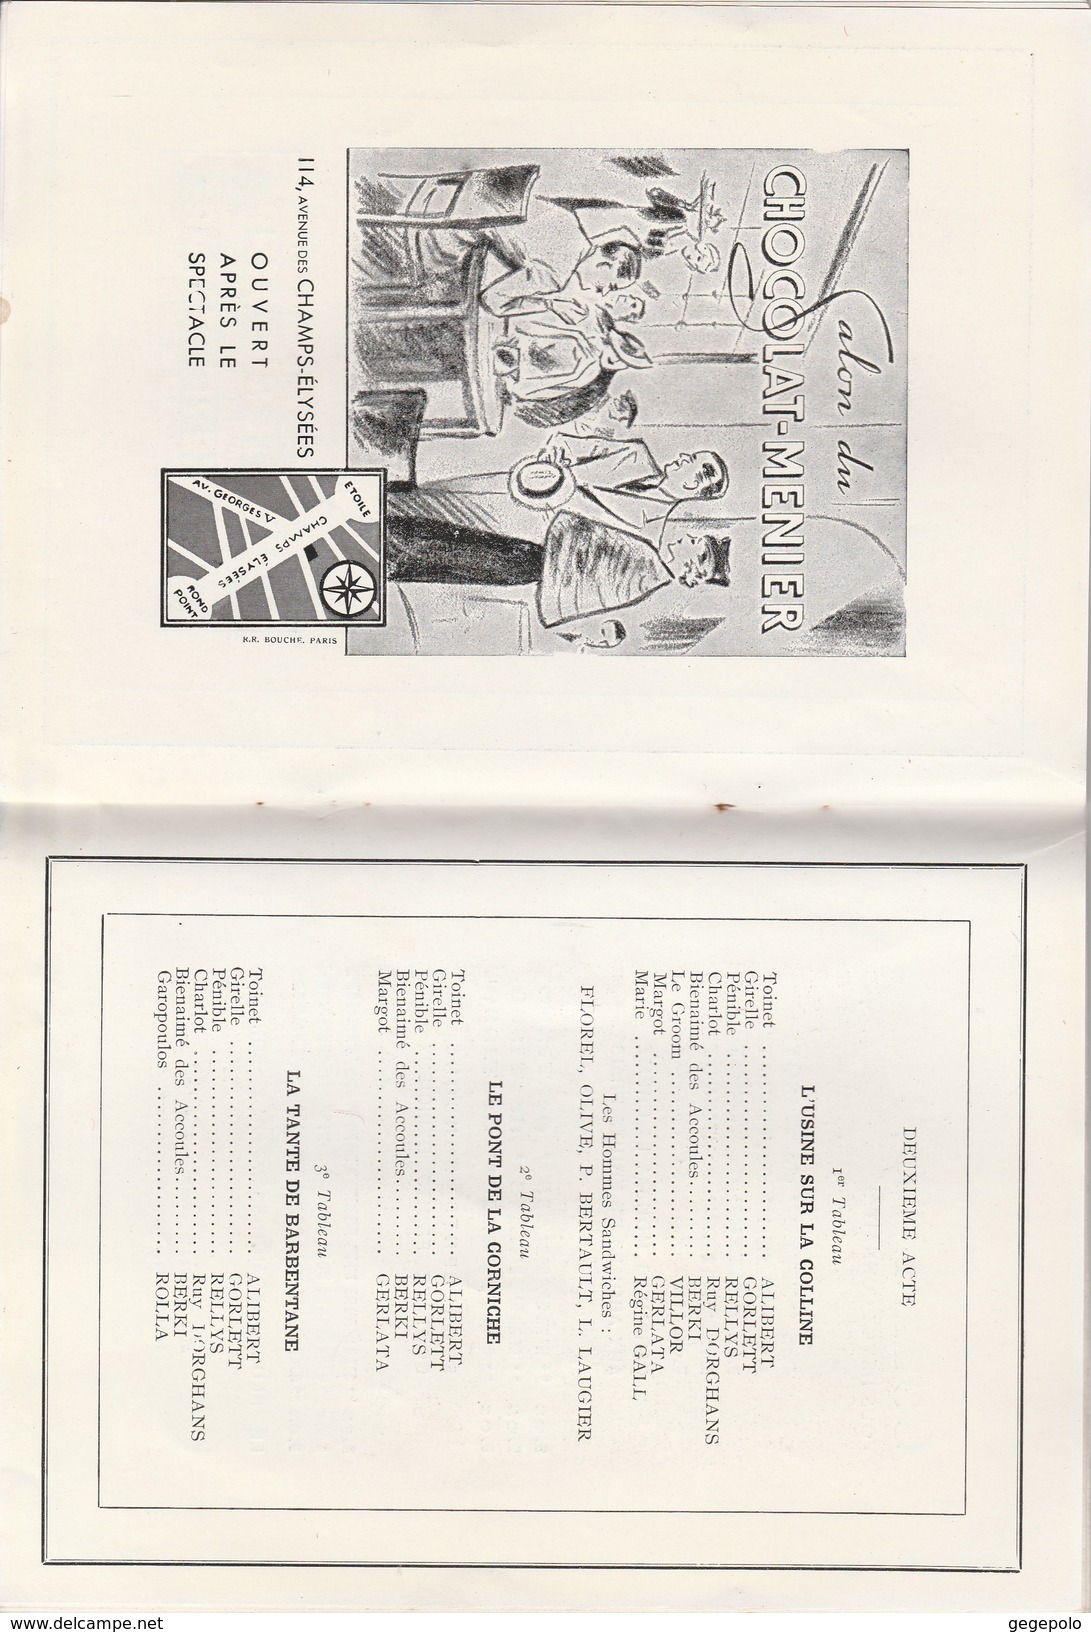 75 - Programme Théatre des Variétés Saison 1936-1937 ( 40 pages format 18 cm x 13,5 cm )    très rare